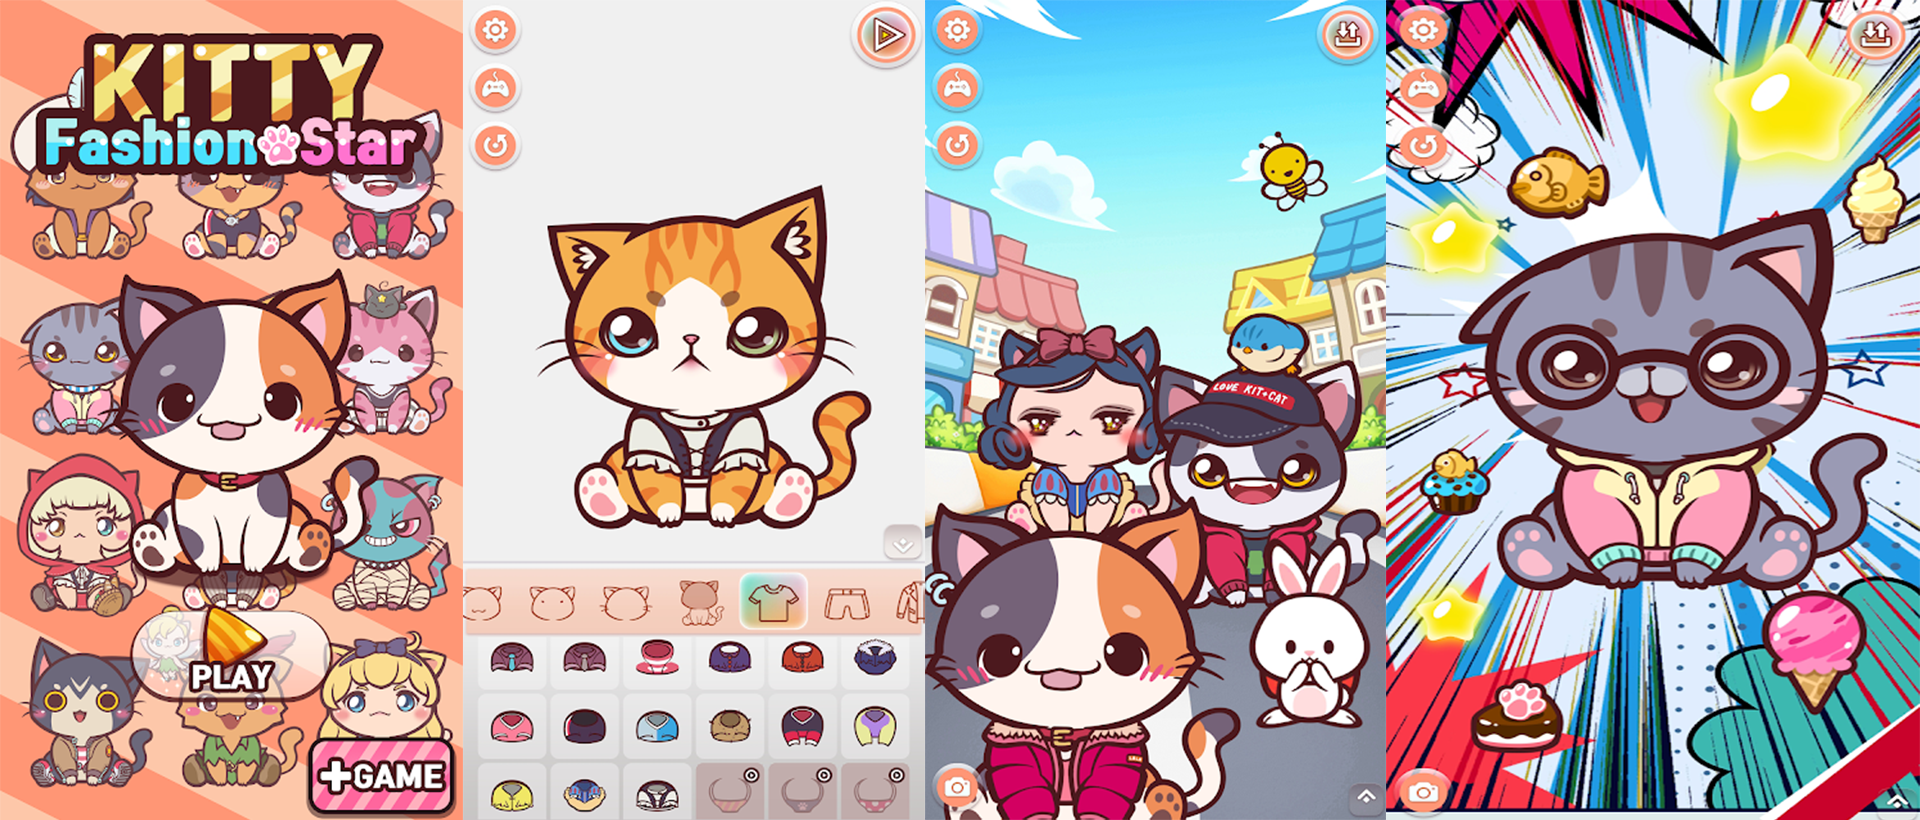 키티 패션 스타: 귀여운 고양이 만들기 PC 버전, 컴퓨터에서 설치하고 안전하게 즐기자 - 녹스 앱플레이어